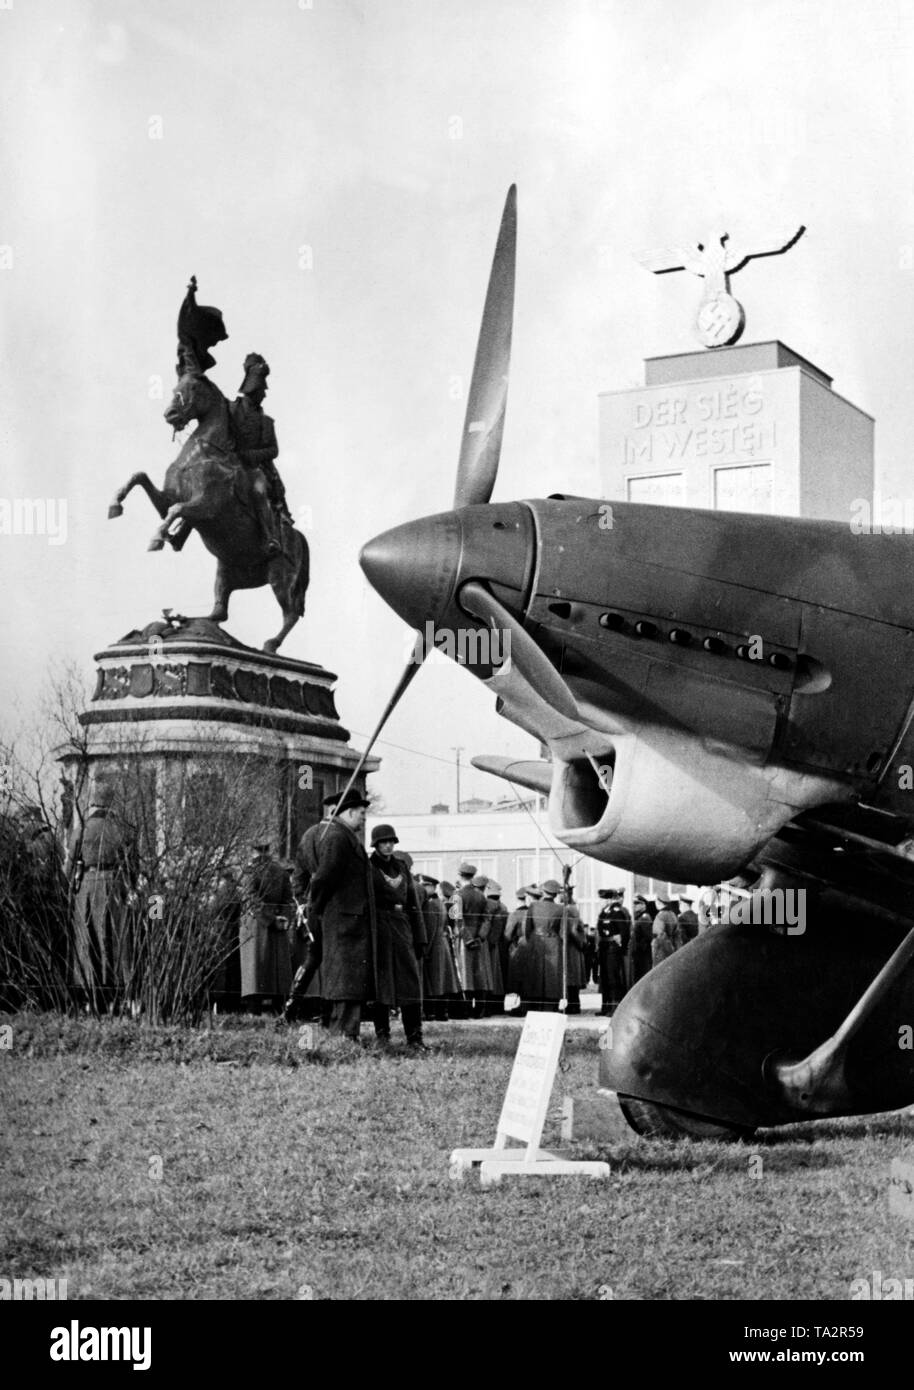 Reichsmarschall Hermann Göring öffnet der Wehrmachtsausstellung ieg im Westen" ( "Sieg im Westen"). Auf der linken Seite ist das Reiterstandbild von Erzherzog Karl von fernkorn. Auf der rechten Seite wird eine Junkers Ju 87 Der tuka'. Im Hintergrund der Turm mit der Inschrift "Sieg im Westen". Stockfoto